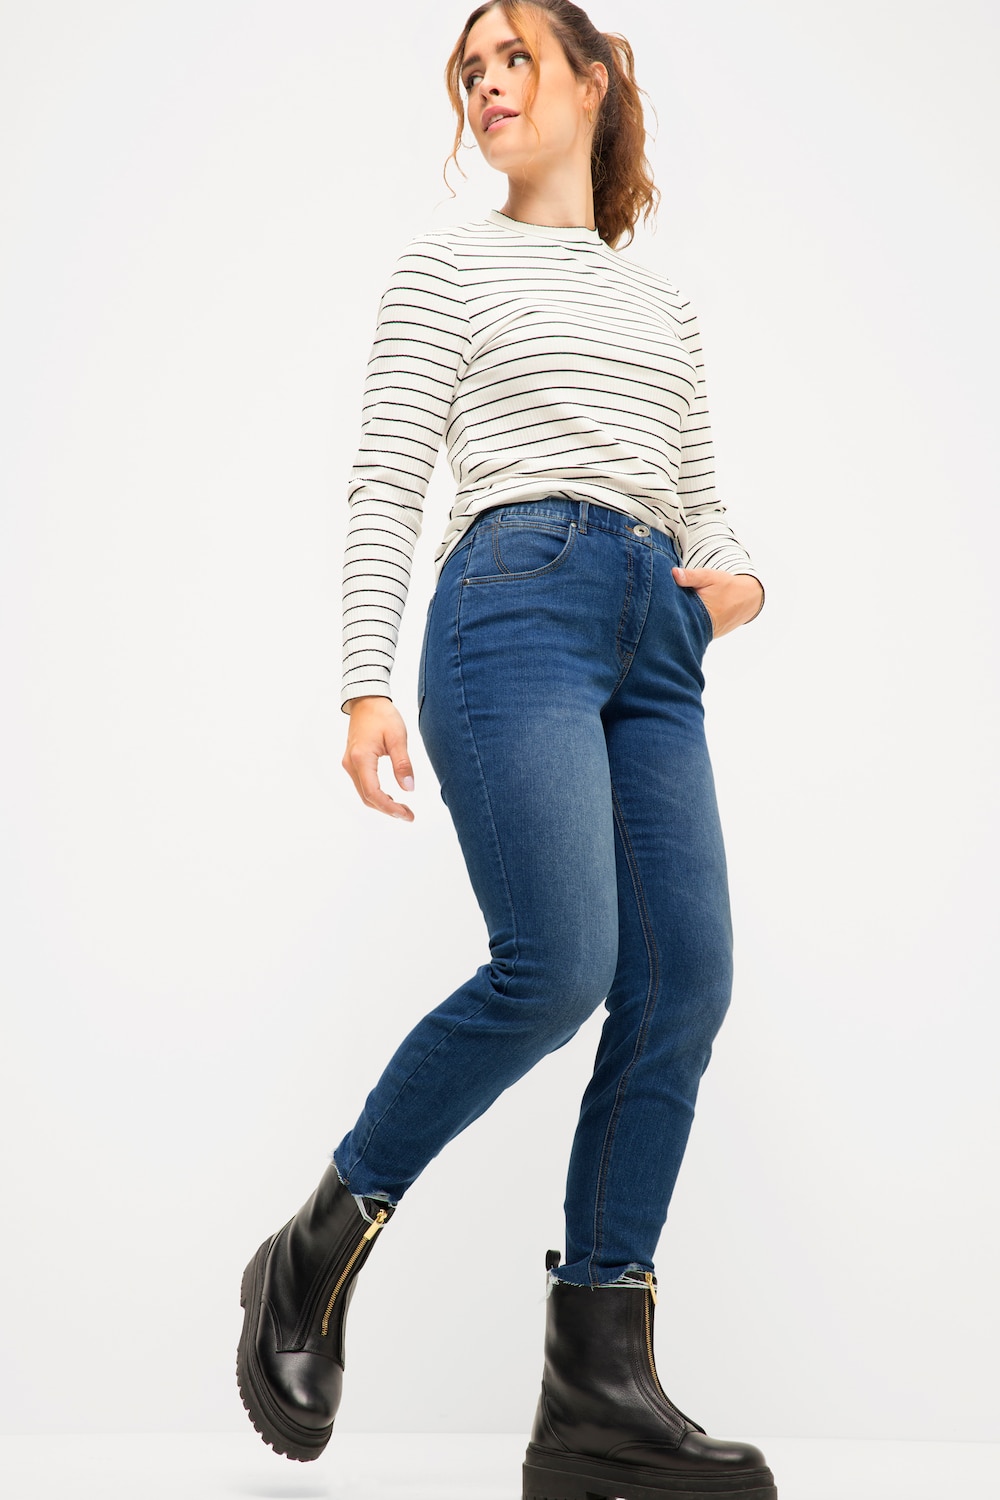 Grote Maten Skinny jeans, Dames, blauw, Maat: 44, Katoen/Polyester, Studio Untold